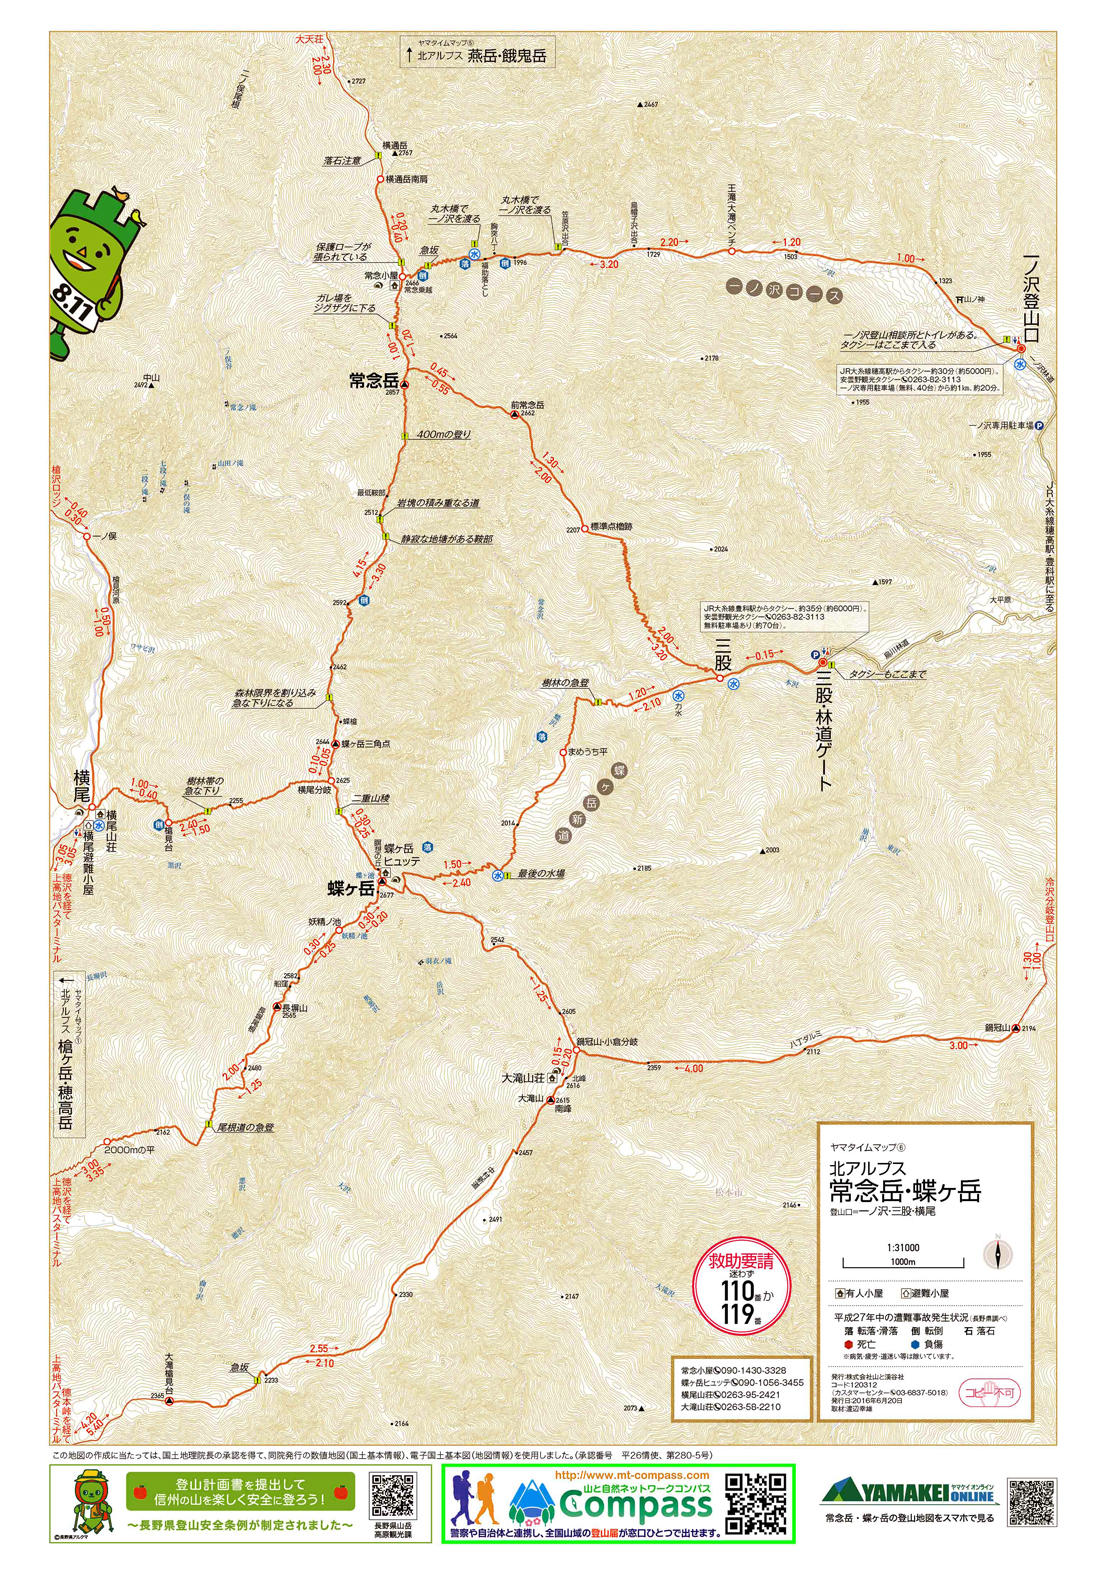 コンビニで手軽にプリントできる登山地図『ヤマタイムマップ』。 山の日記念限定バージョンを全国のファミリーマートで8月9日から販売開始。 北アルプス、八ヶ岳、丹沢、奥多摩、高尾山など全21枚